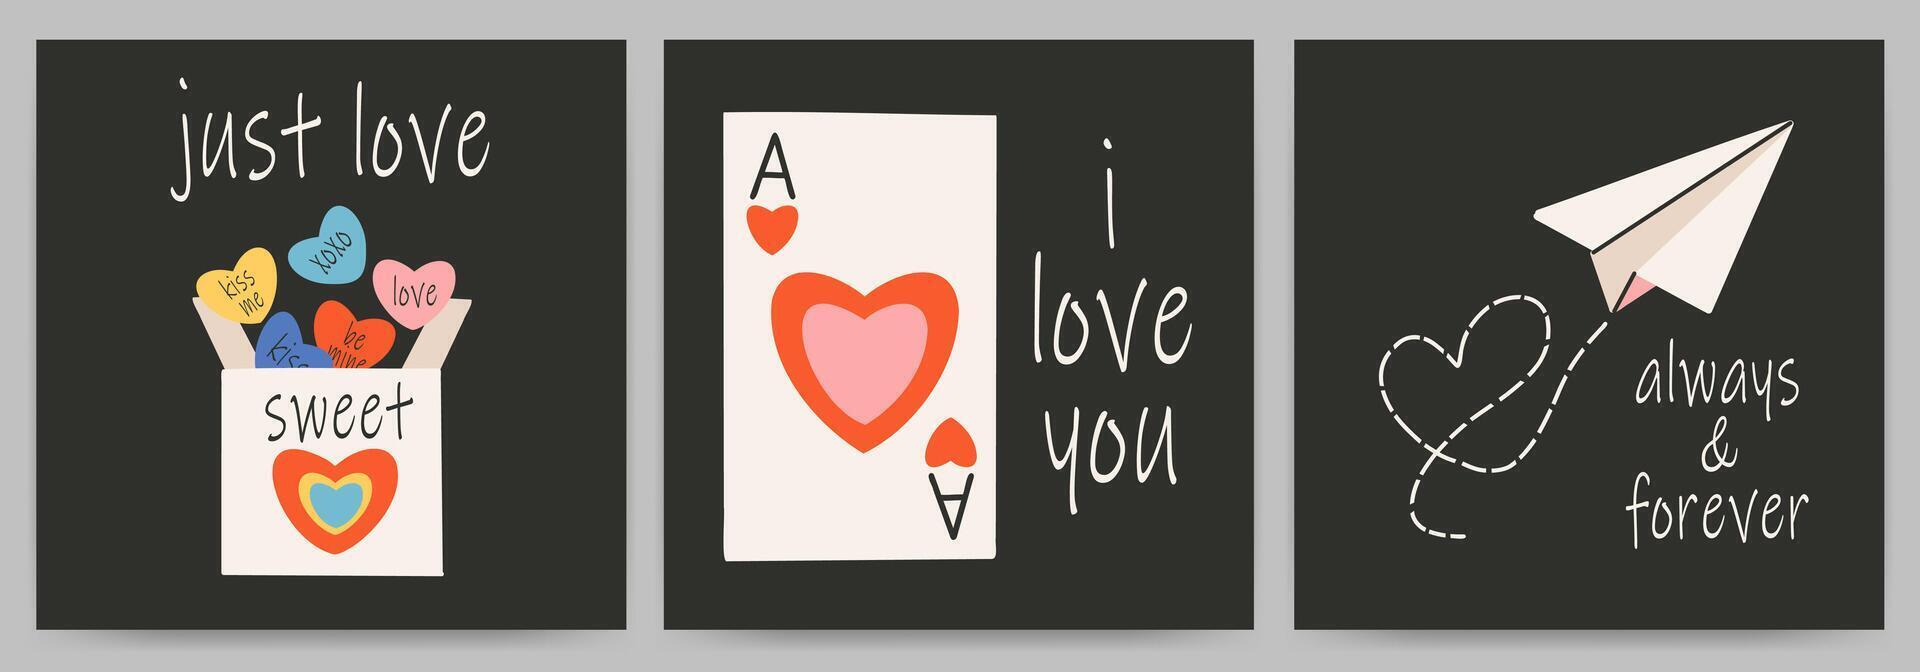 postales plantillas conjunto para Santo San Valentín día, 14 febrero. mano dibujado tarjetas con tarjetas, dulce, papel avión, corazón, texto. vector